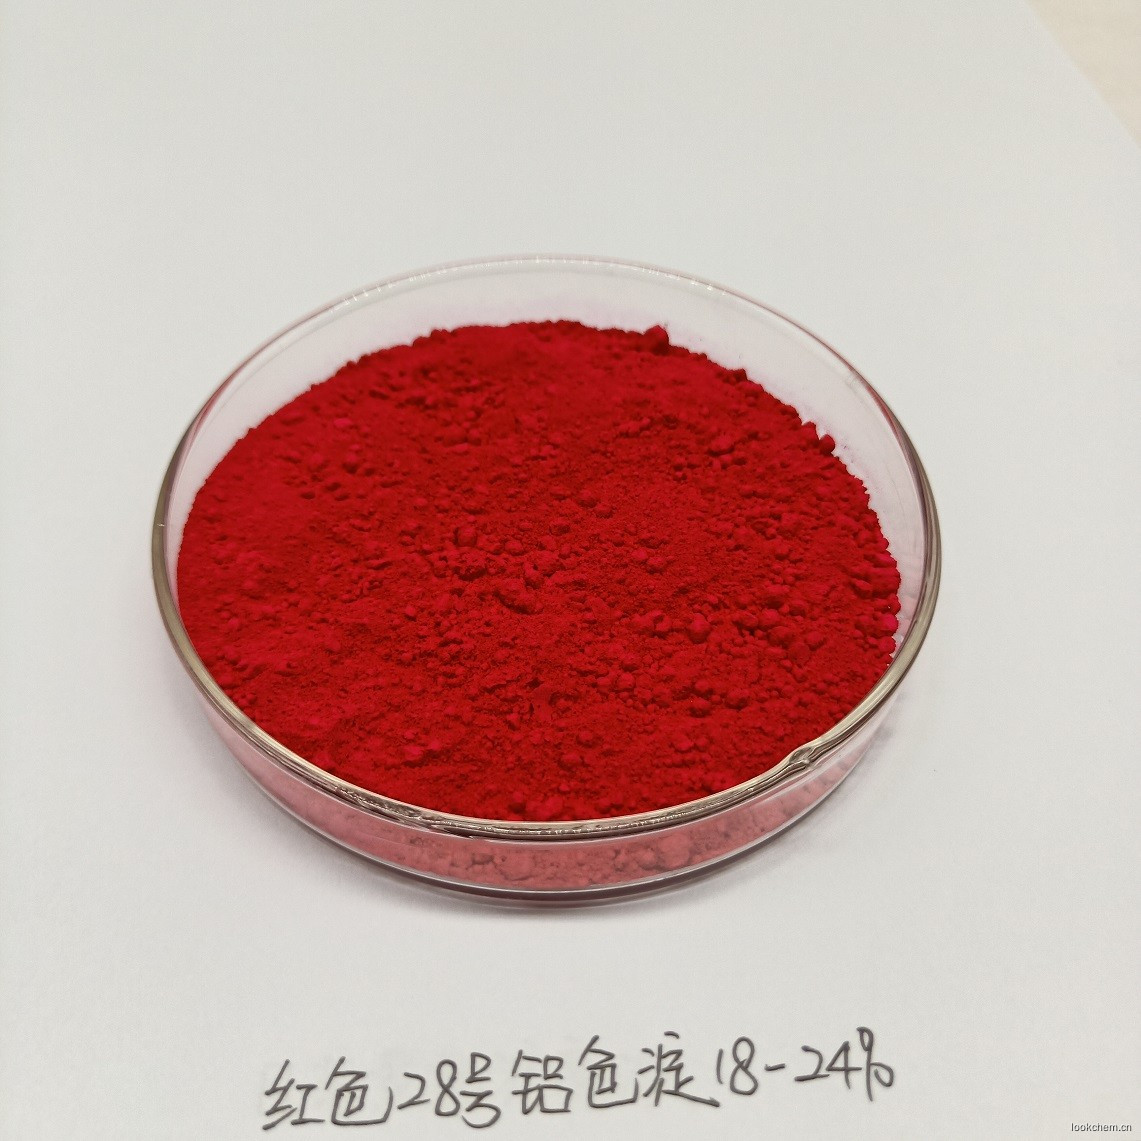 红28色淀18-24% CI 45410:2 化妆品专用色淀 IDACOL 色素